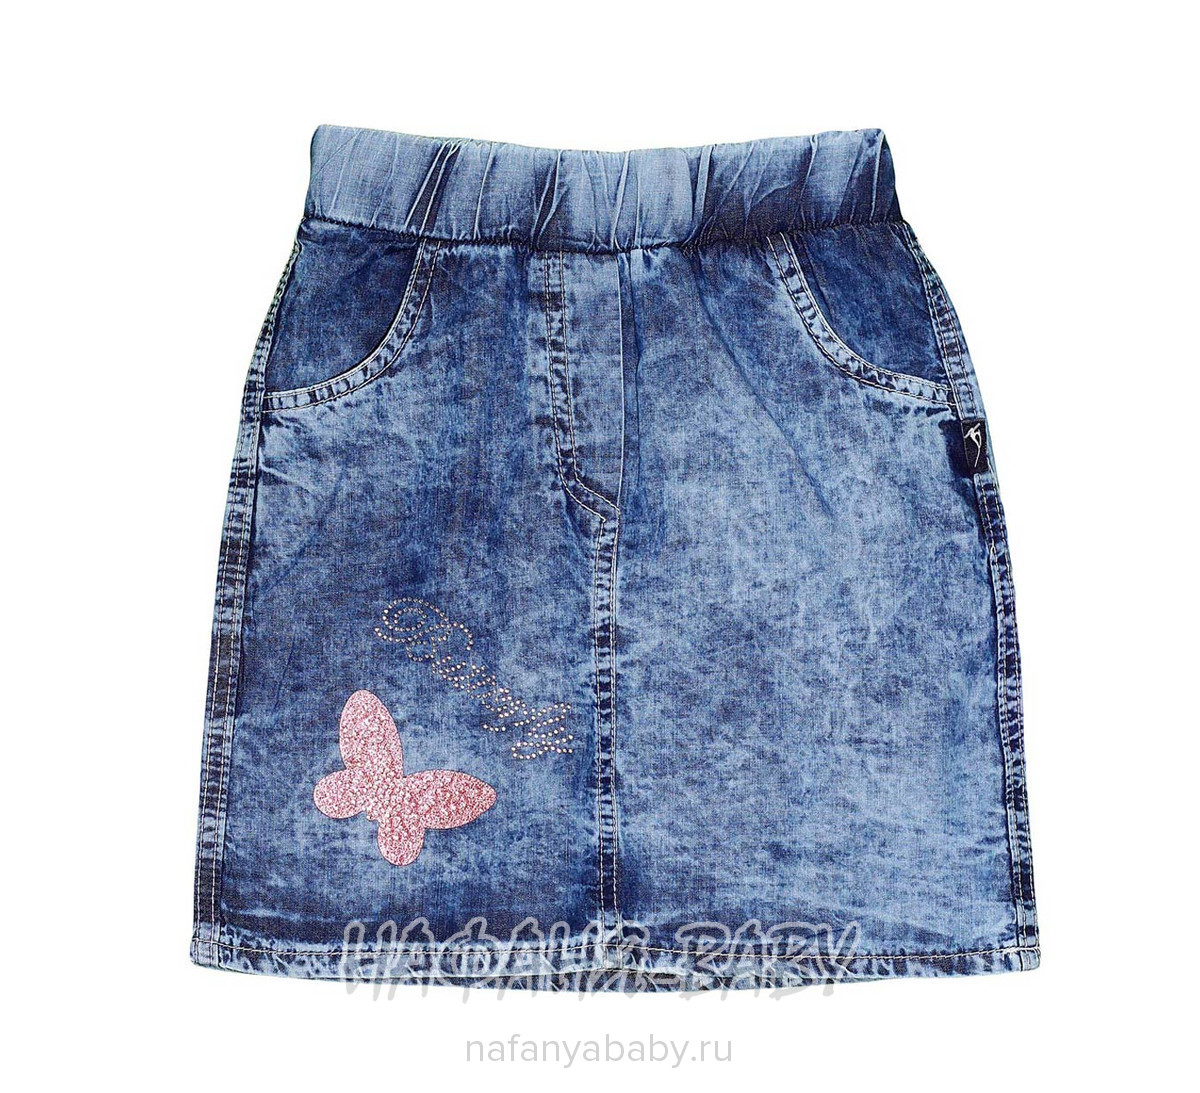 Детская джинсовая юбка AKIRA арт: 2627, 5-9 лет, 1-4 года, оптом Турция